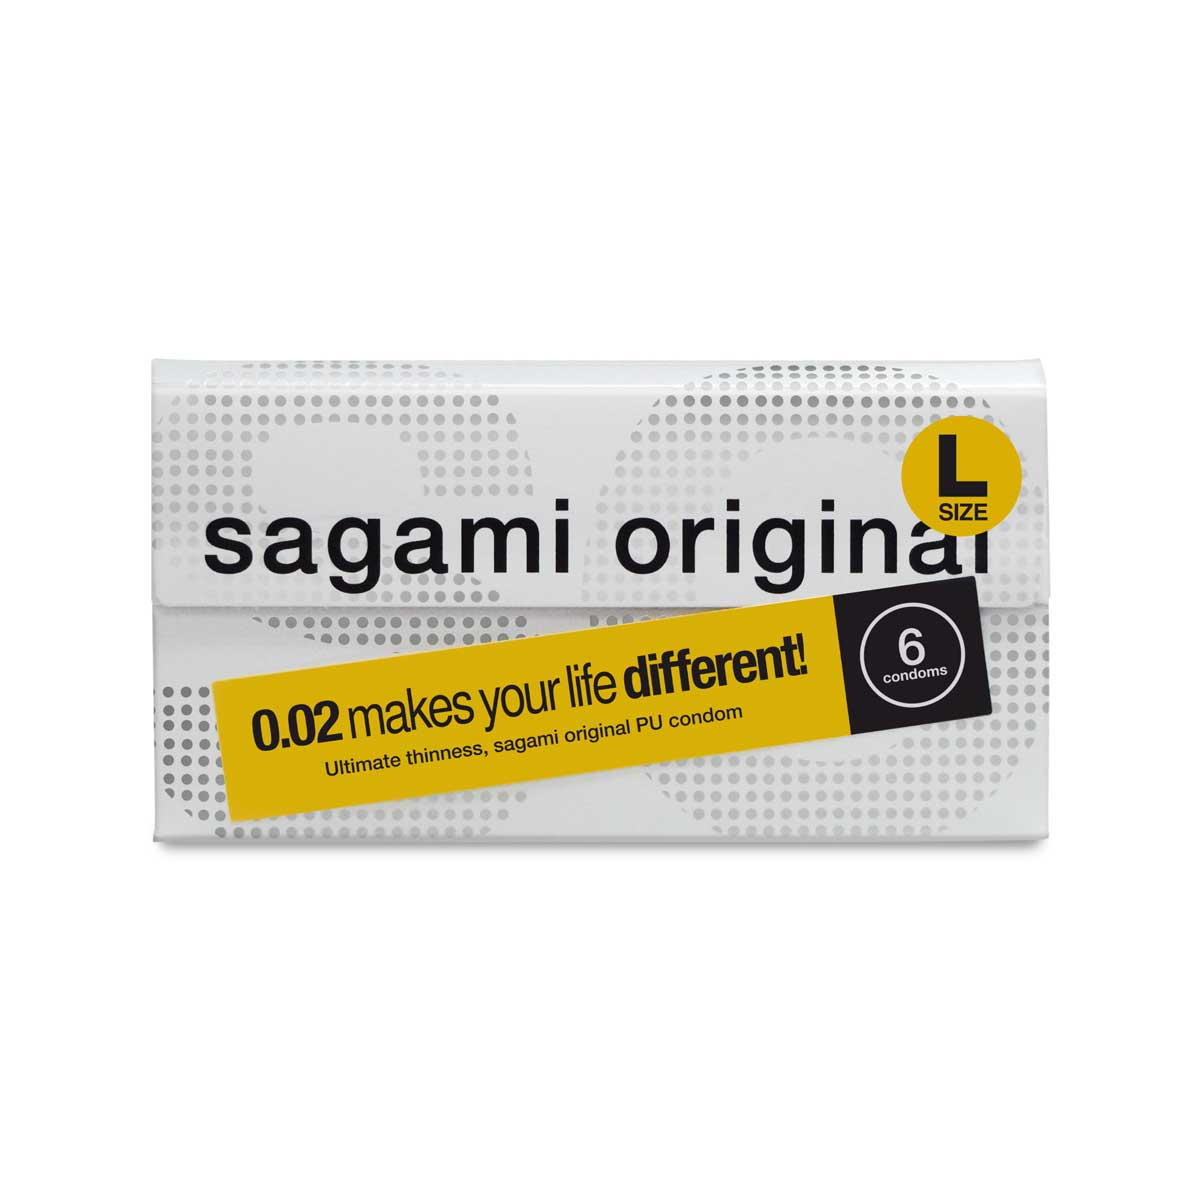 Sagami Original 0.02 L Size 6s